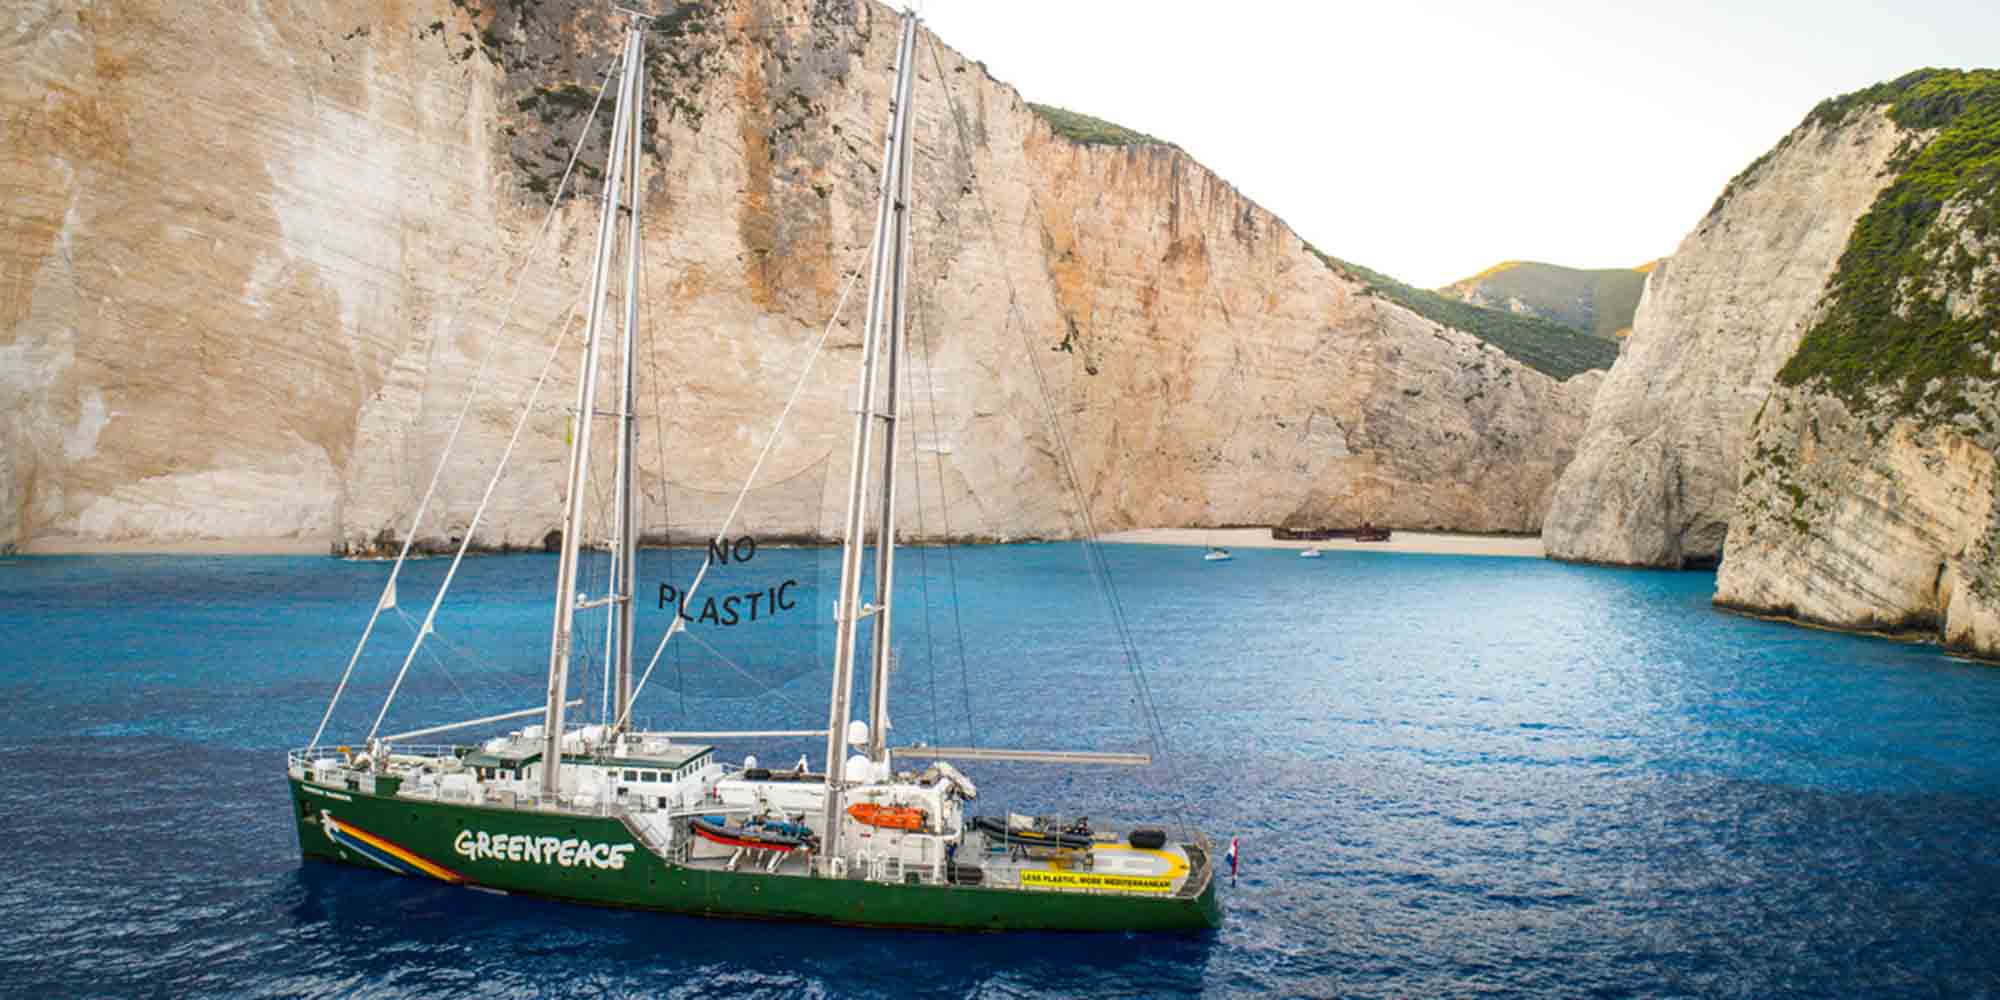 Πλοίο της Greenpeace μπροστά από την παραλία ναυάγιο της Ζακύνθου